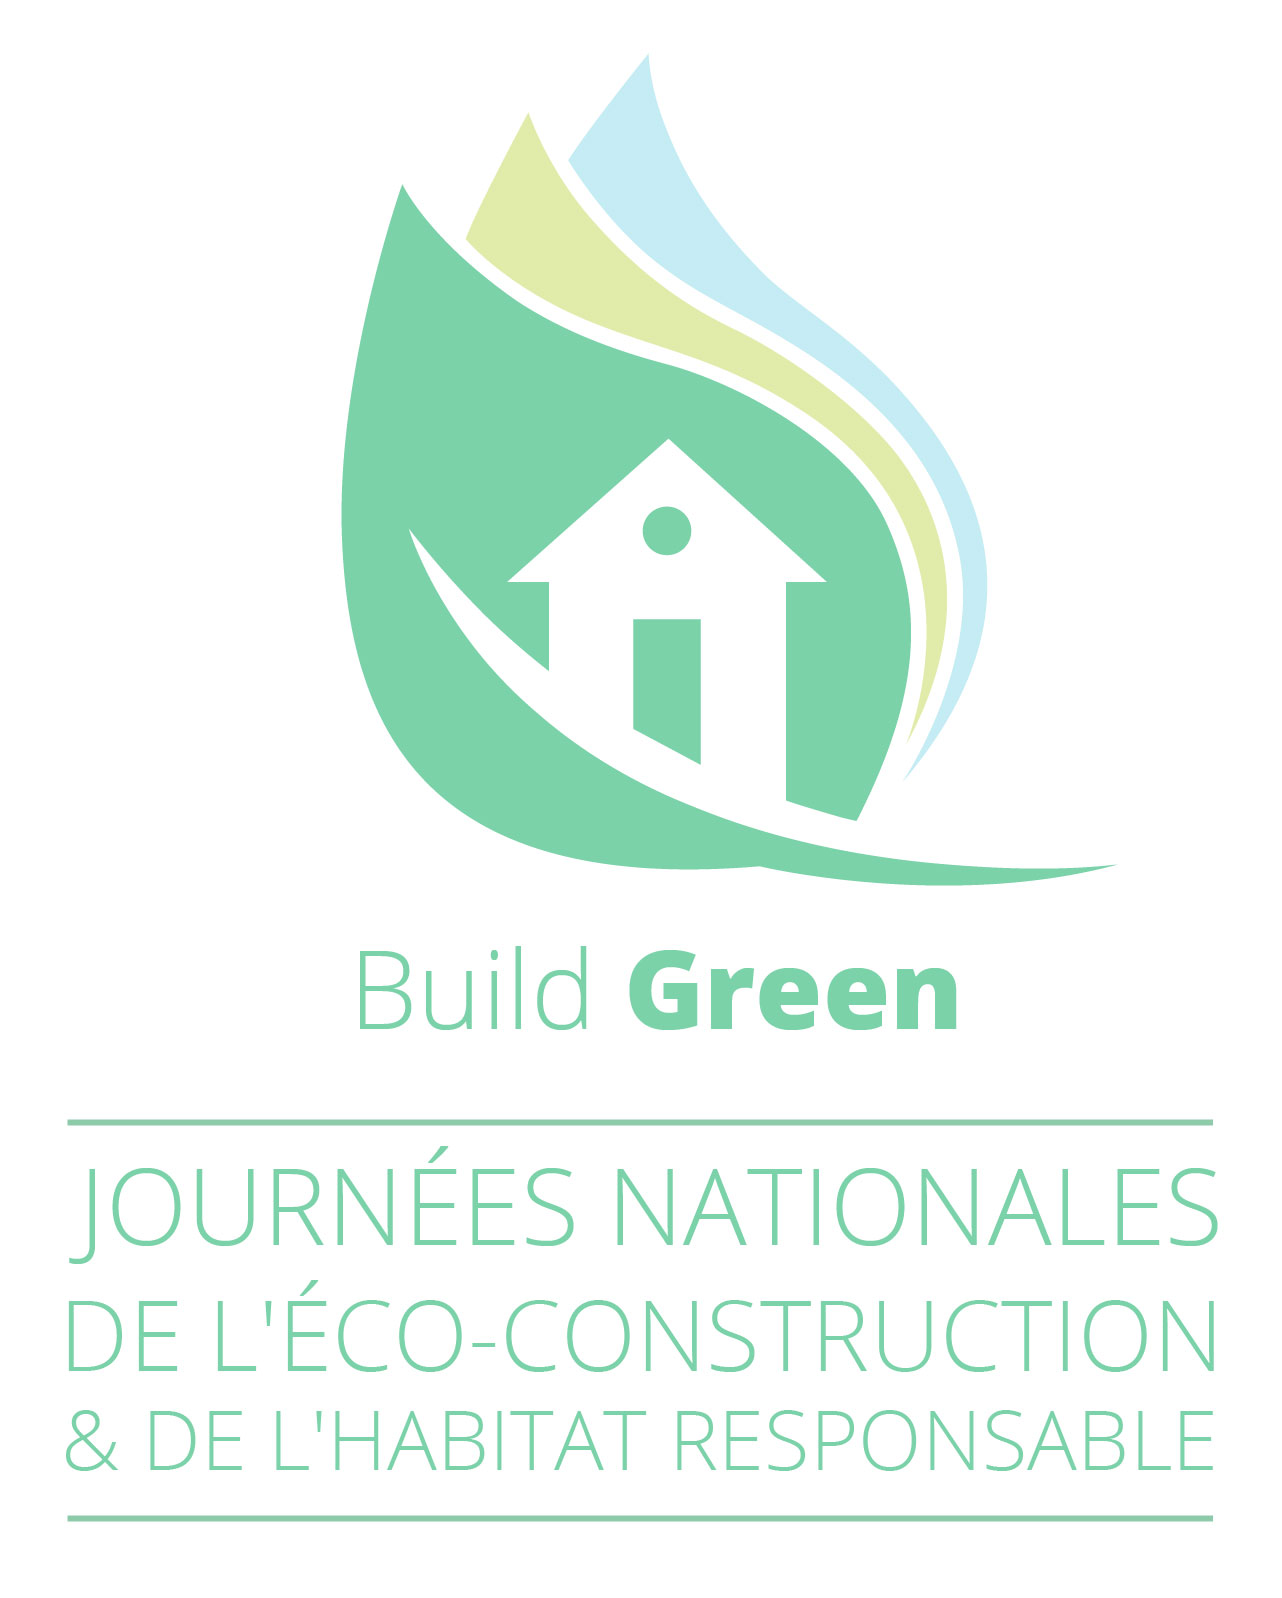 Journée nationales de l'éco-construction & de l'habitat responsable